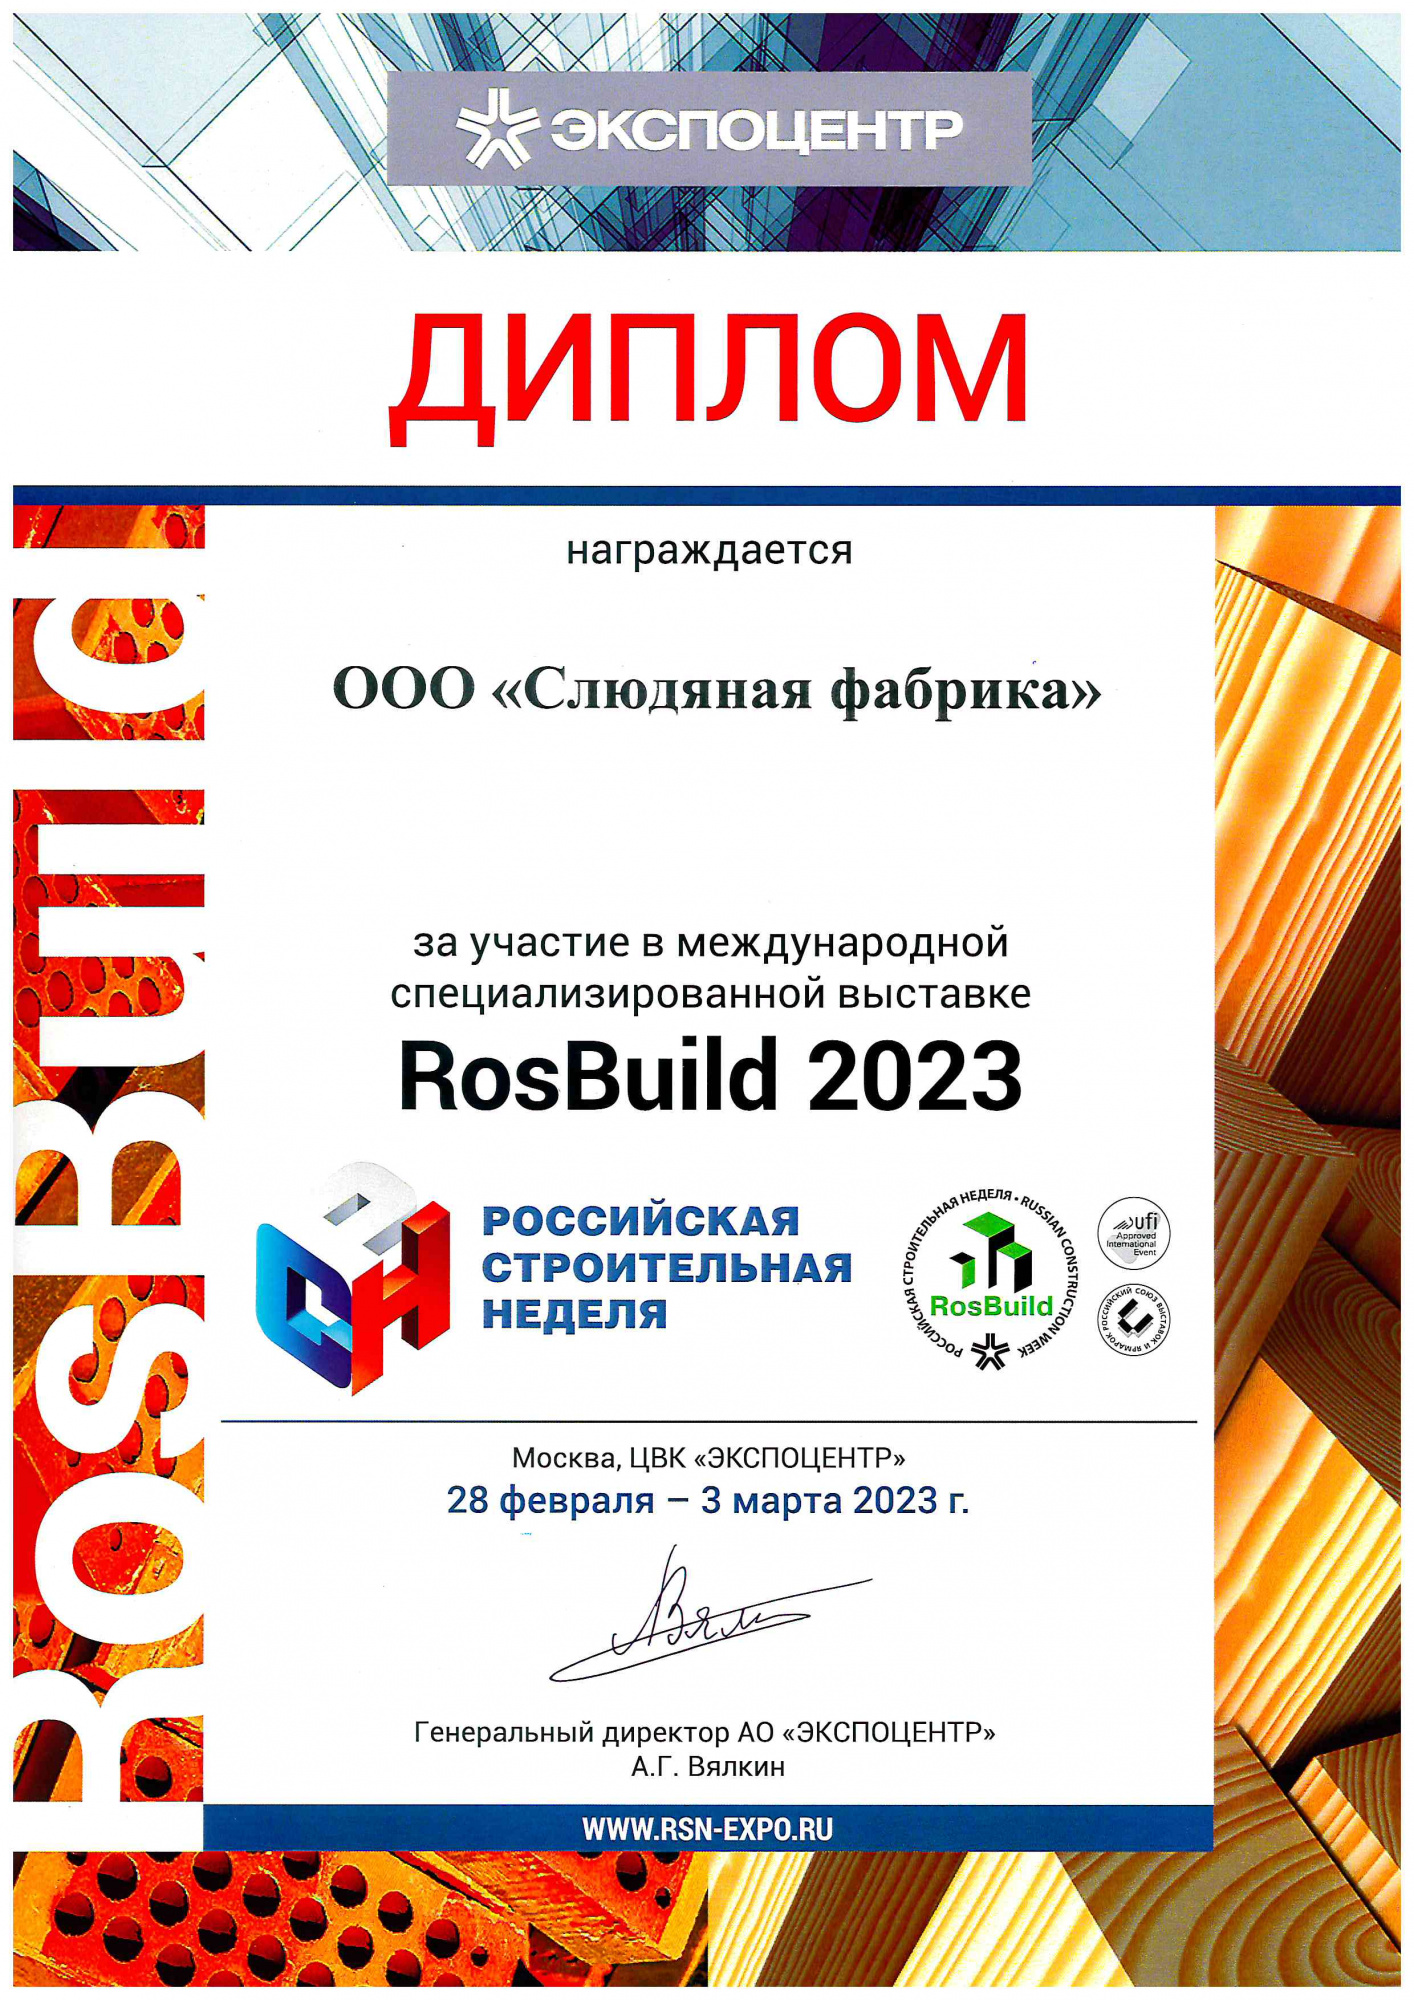 Участие в международной выставке RosBuild - 2023